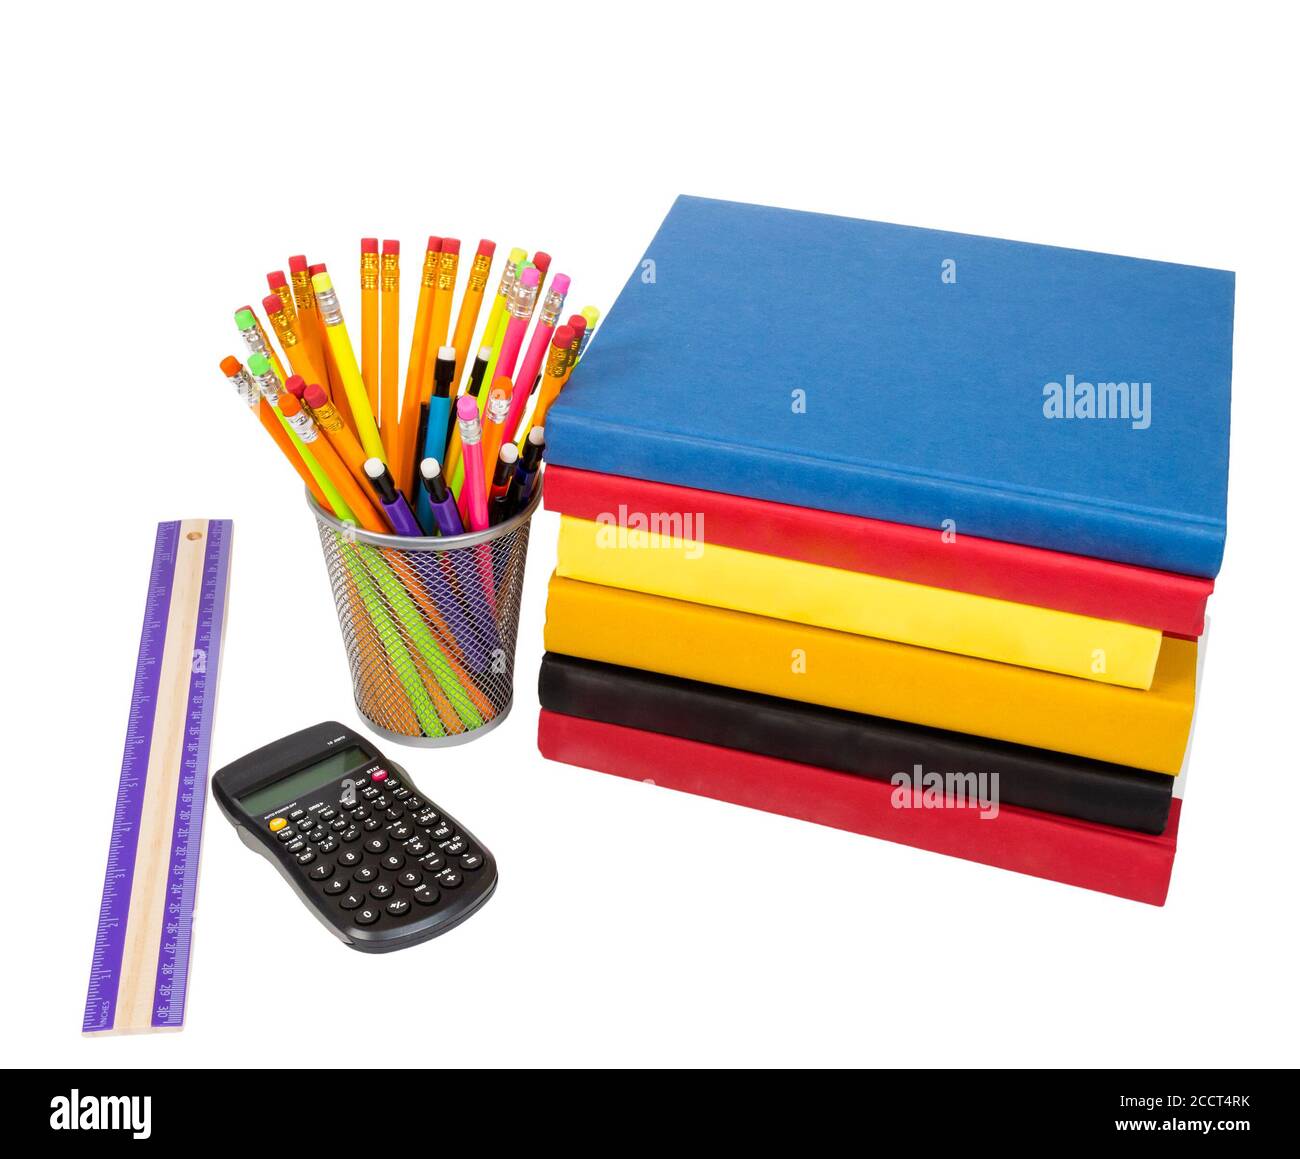 Colpo orizzontale di un gruppo di forniture scolastiche che includono una pila di libri colorati che si stendere sul loro lato, un righello, una calcolatrice, e una matita di filo h Foto Stock